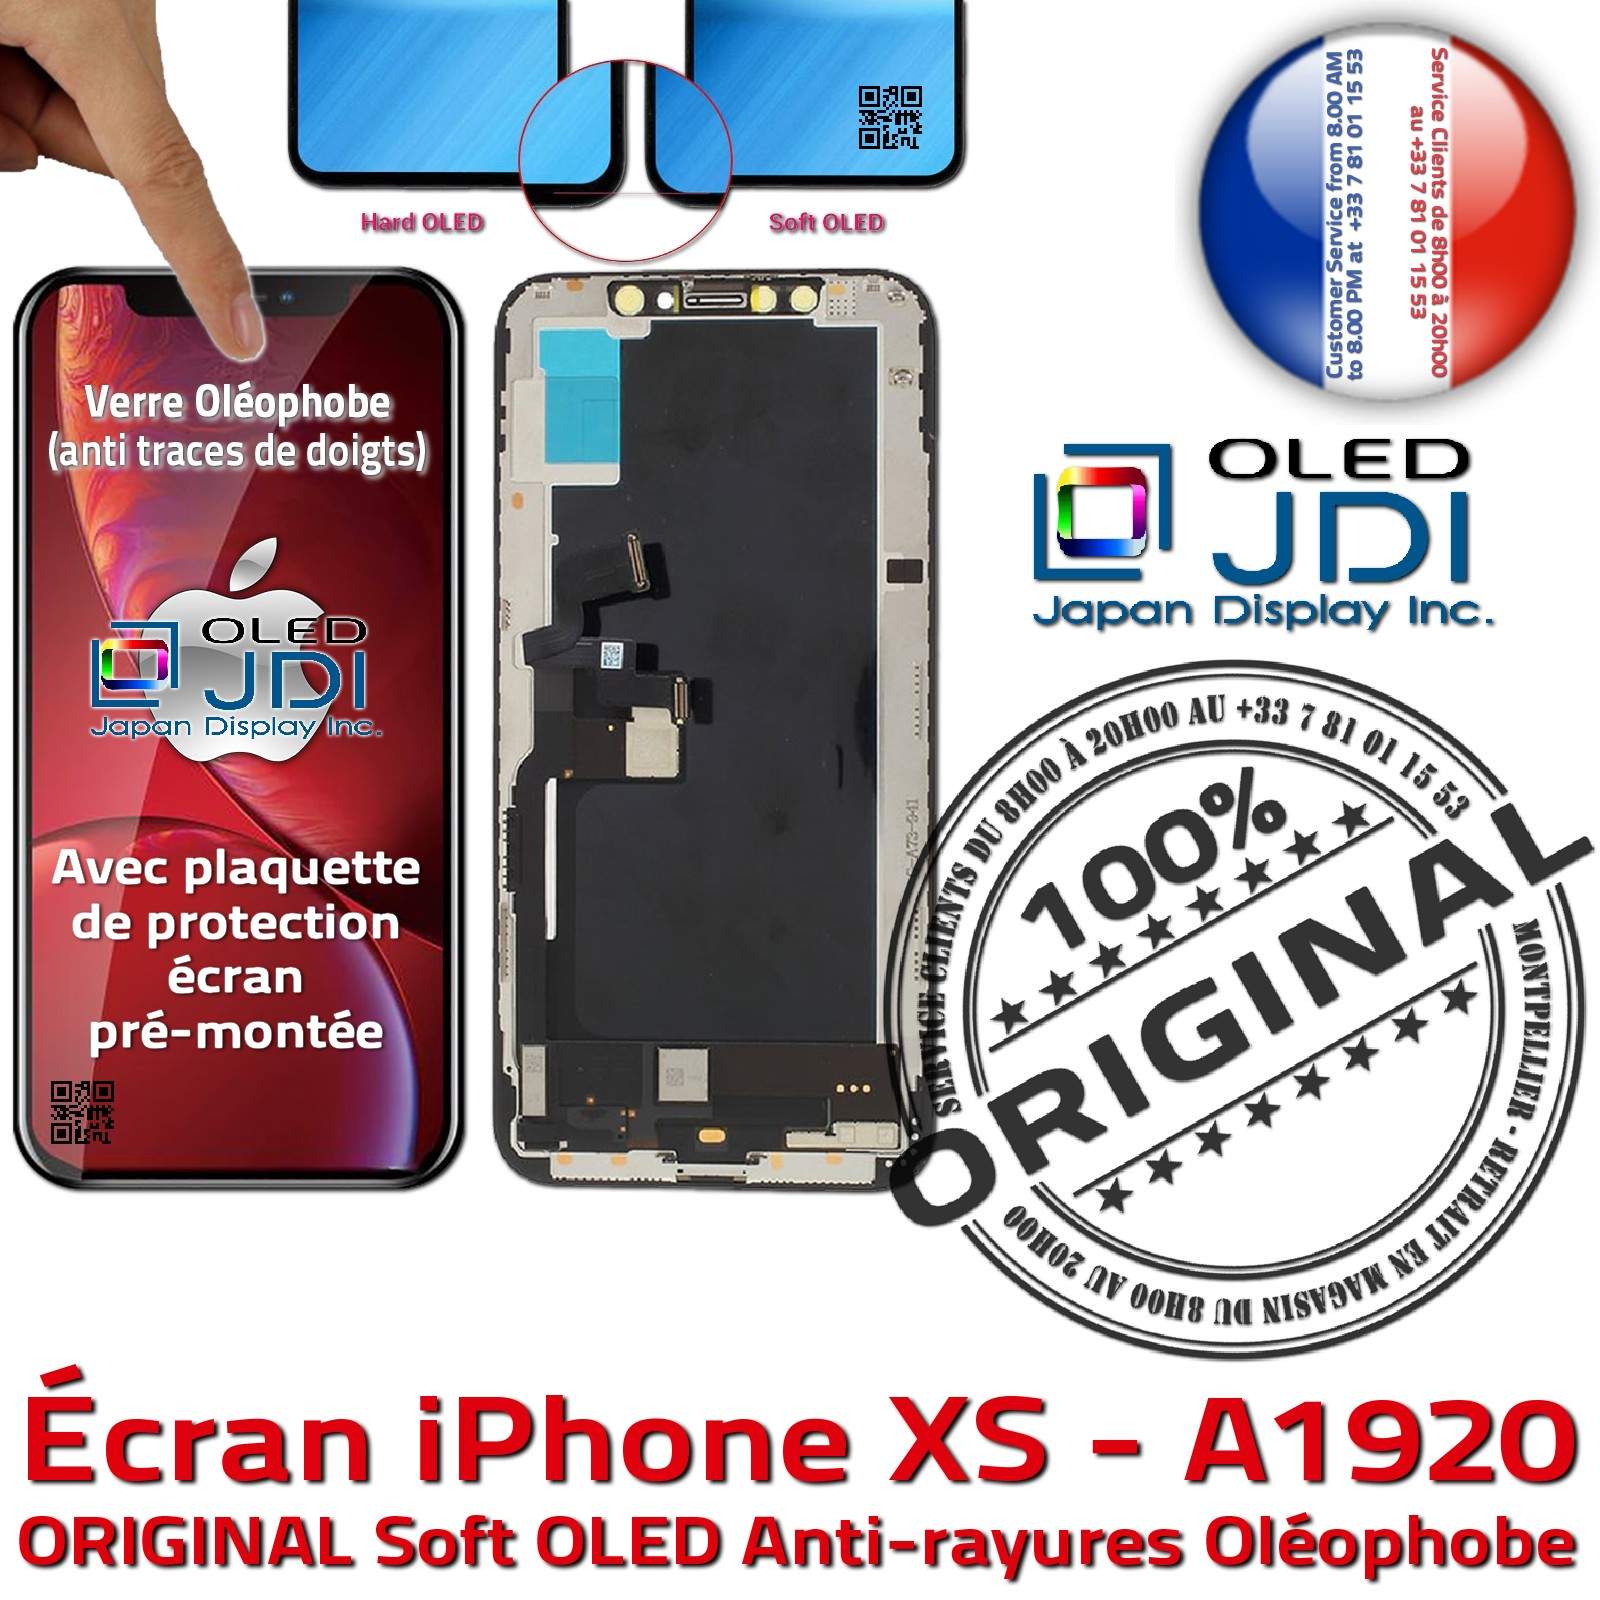 Écran Tactile iPhone XS A1920 soft OLED Apple ORIGINAL Super Retina 5,8 pouces Vitre SmartPhone Affichage True Tone sur Châssis